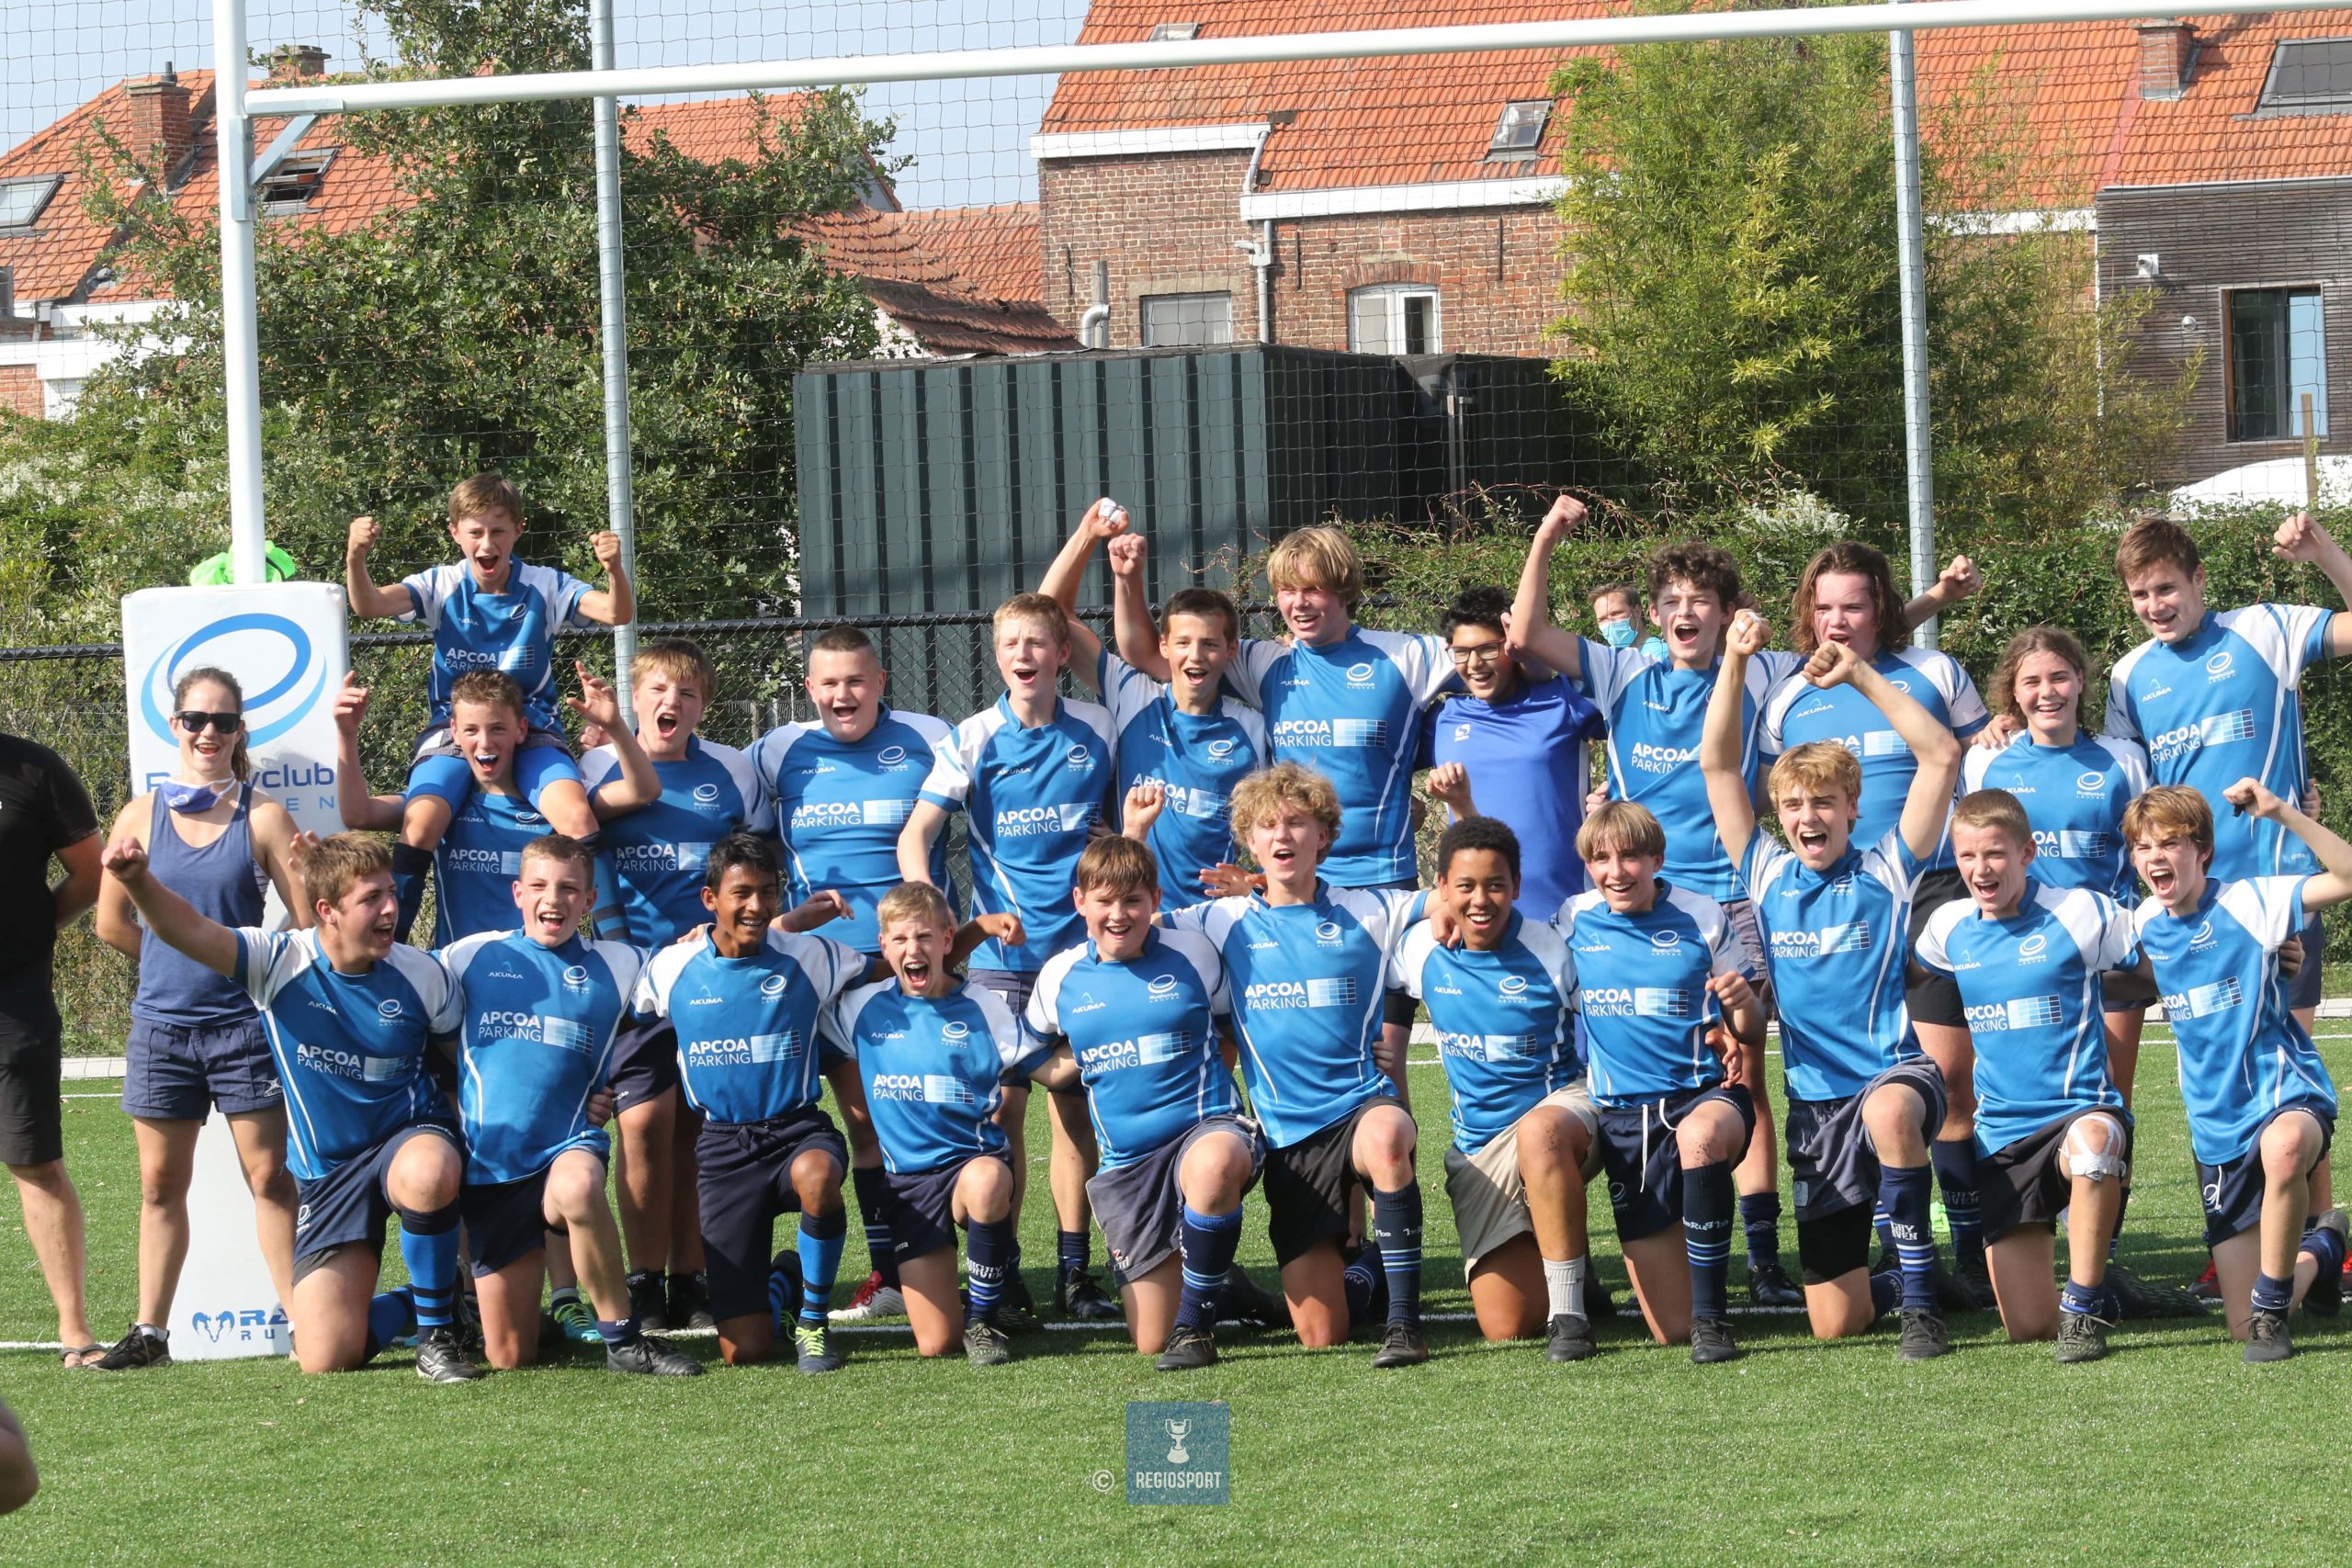 Meer dan 1 op 7 Vlaamse sportclubs in financiële moeilijkheden door corona. Rugby Club Leuven getuigt